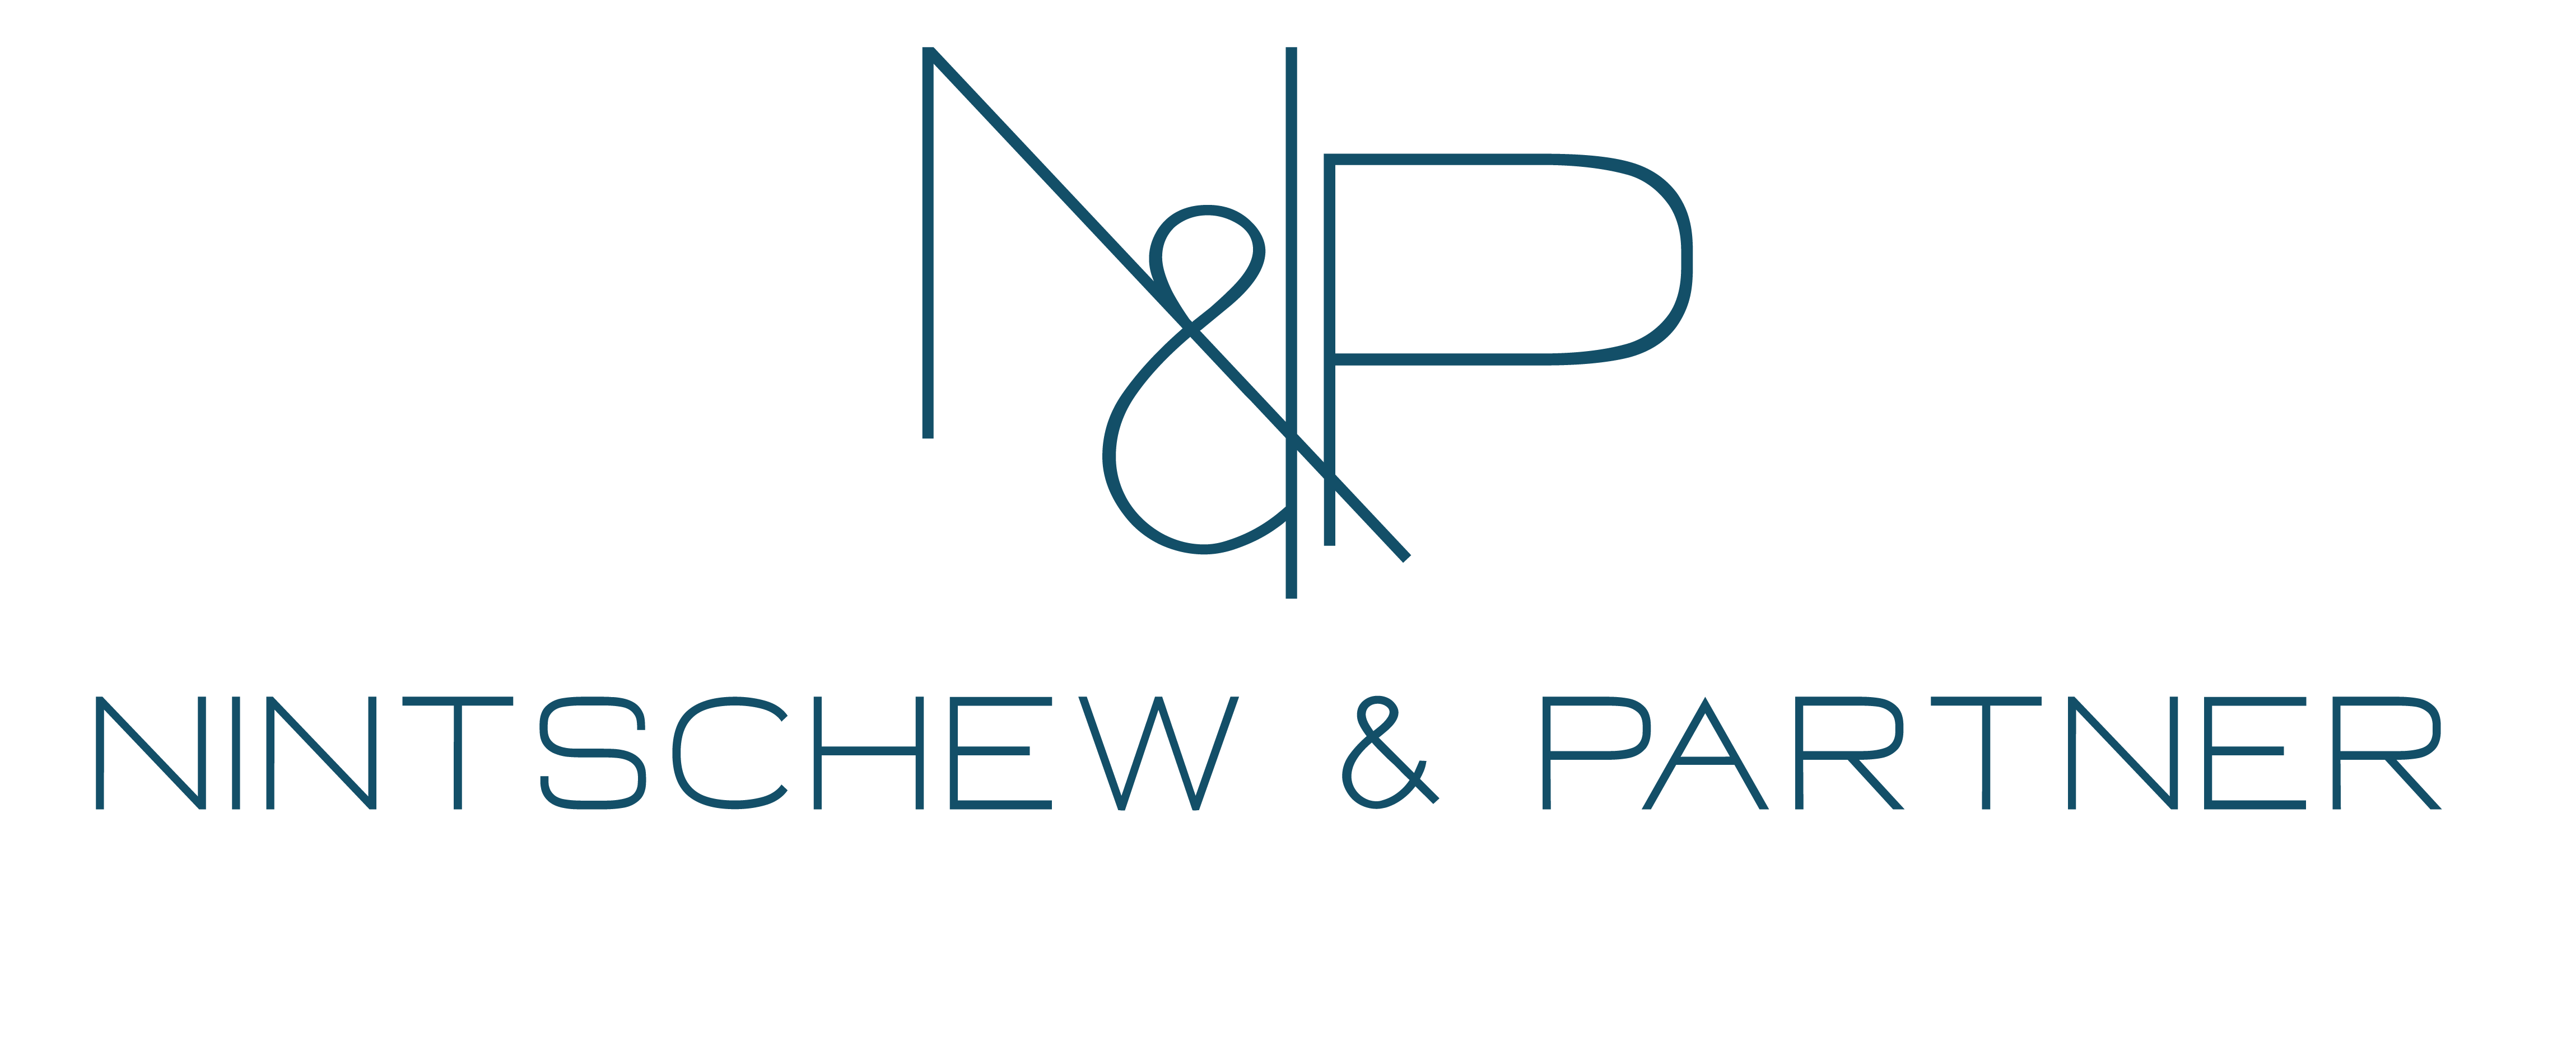 Nintschew & Partner Logo